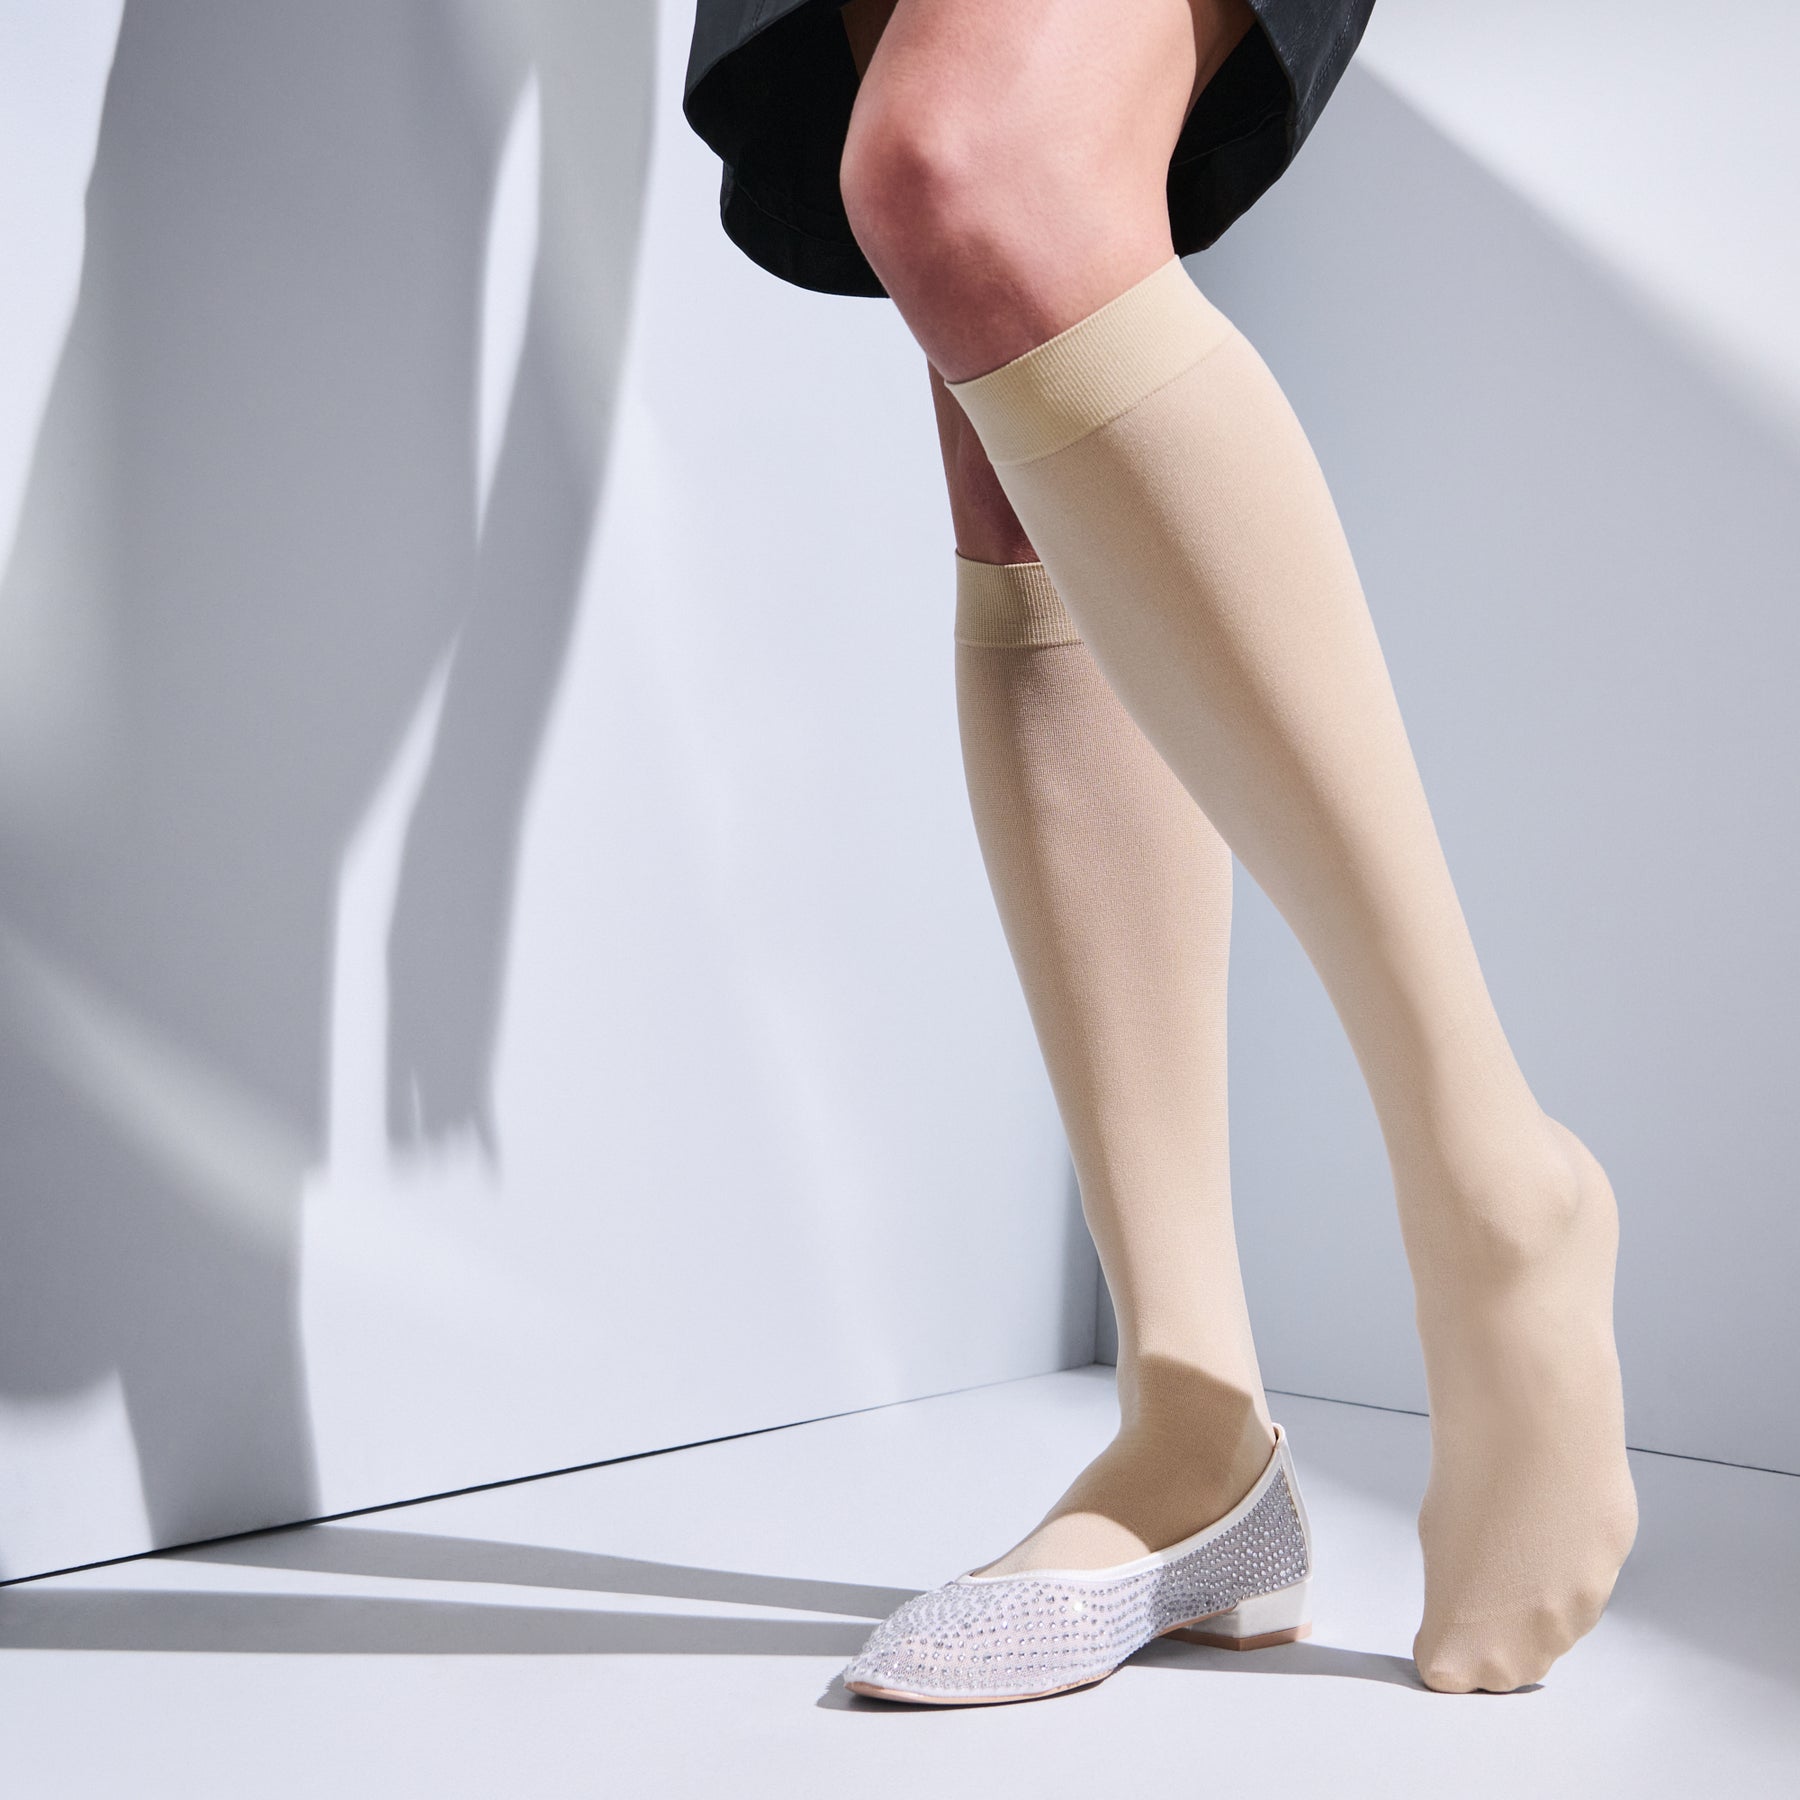 10 Pack Women's Nylon Socks Ankle High Sheer Pantyhose